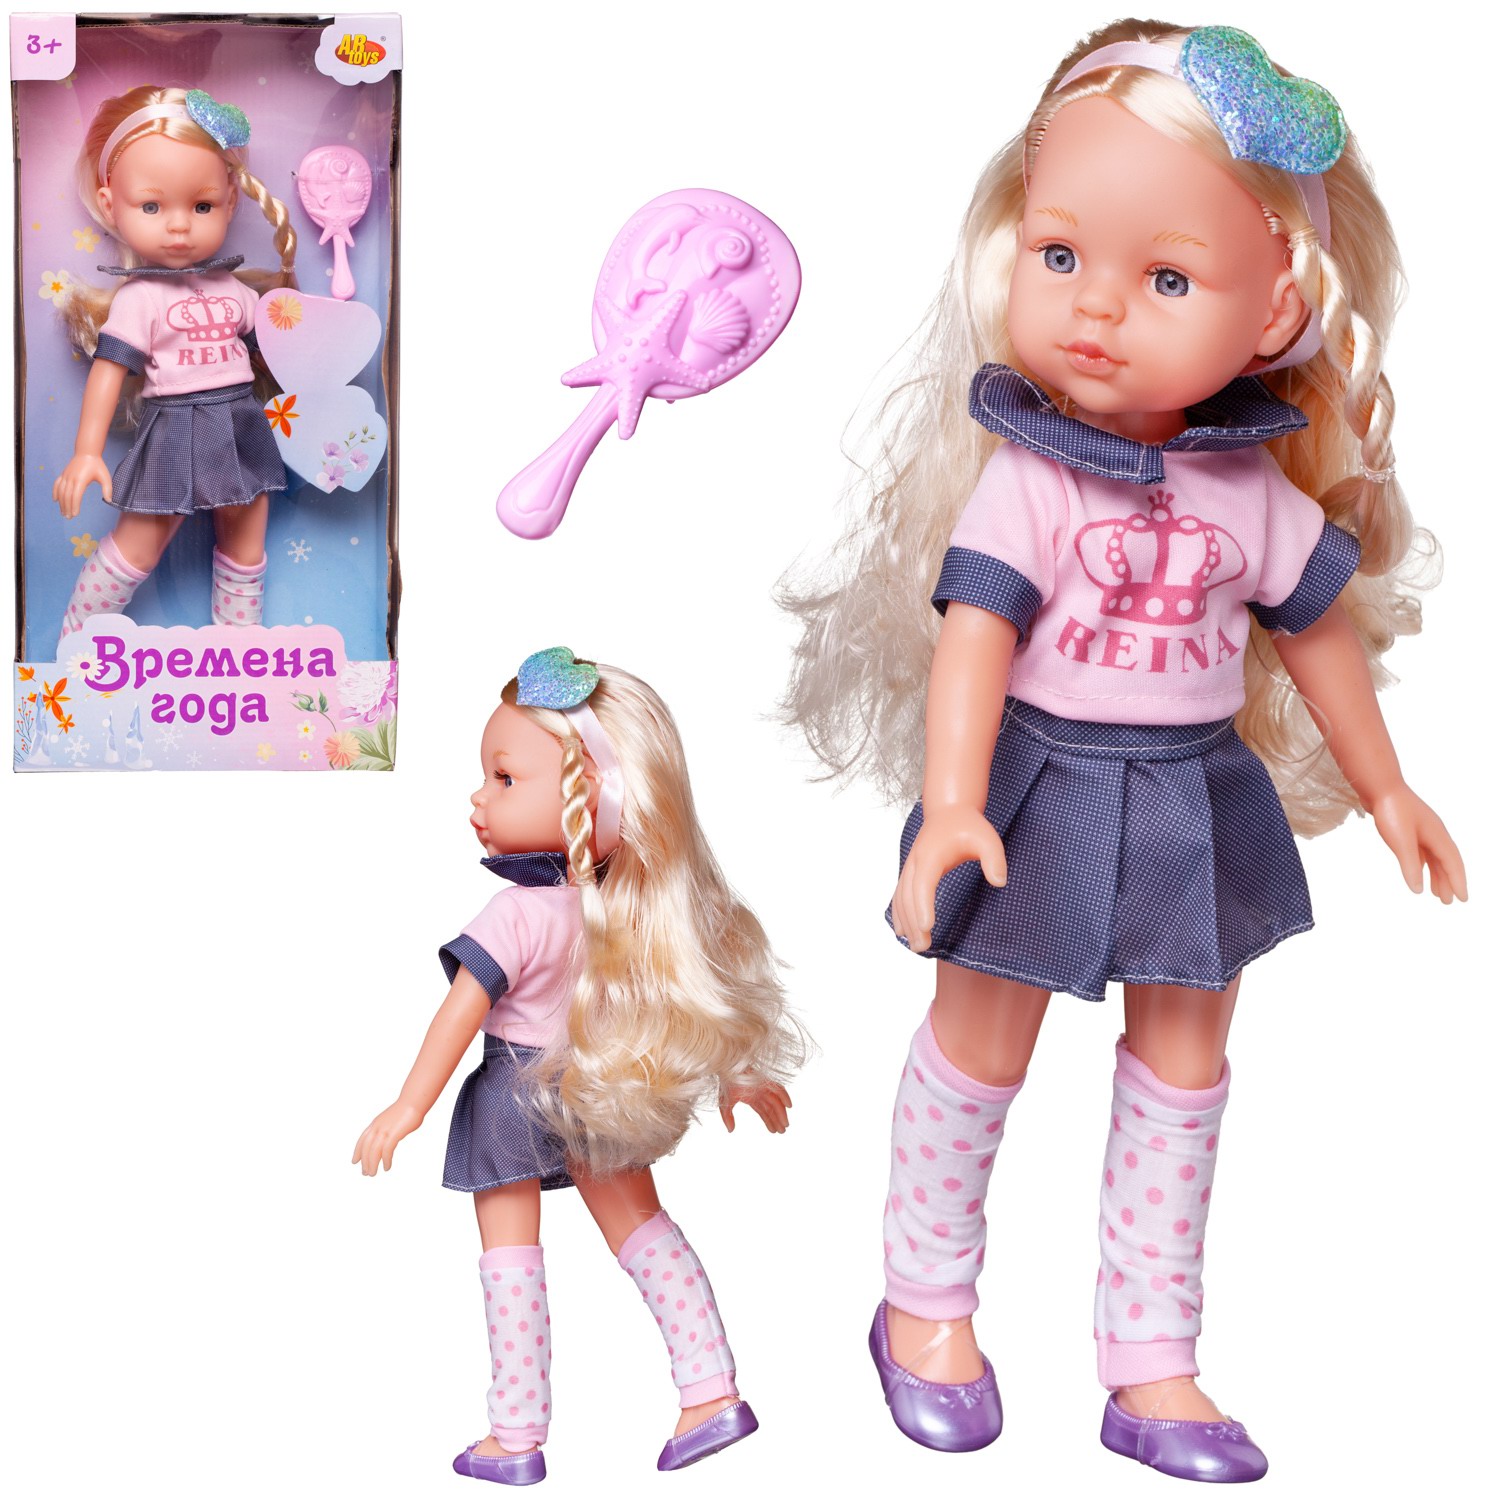 Кукла ABtoys Времена года 32 см в розовой кофте и джинсовой короткой юбке PT-01855 мягкая игрушка abtoys кукла блондинка в джинсовой юбочке 20 см